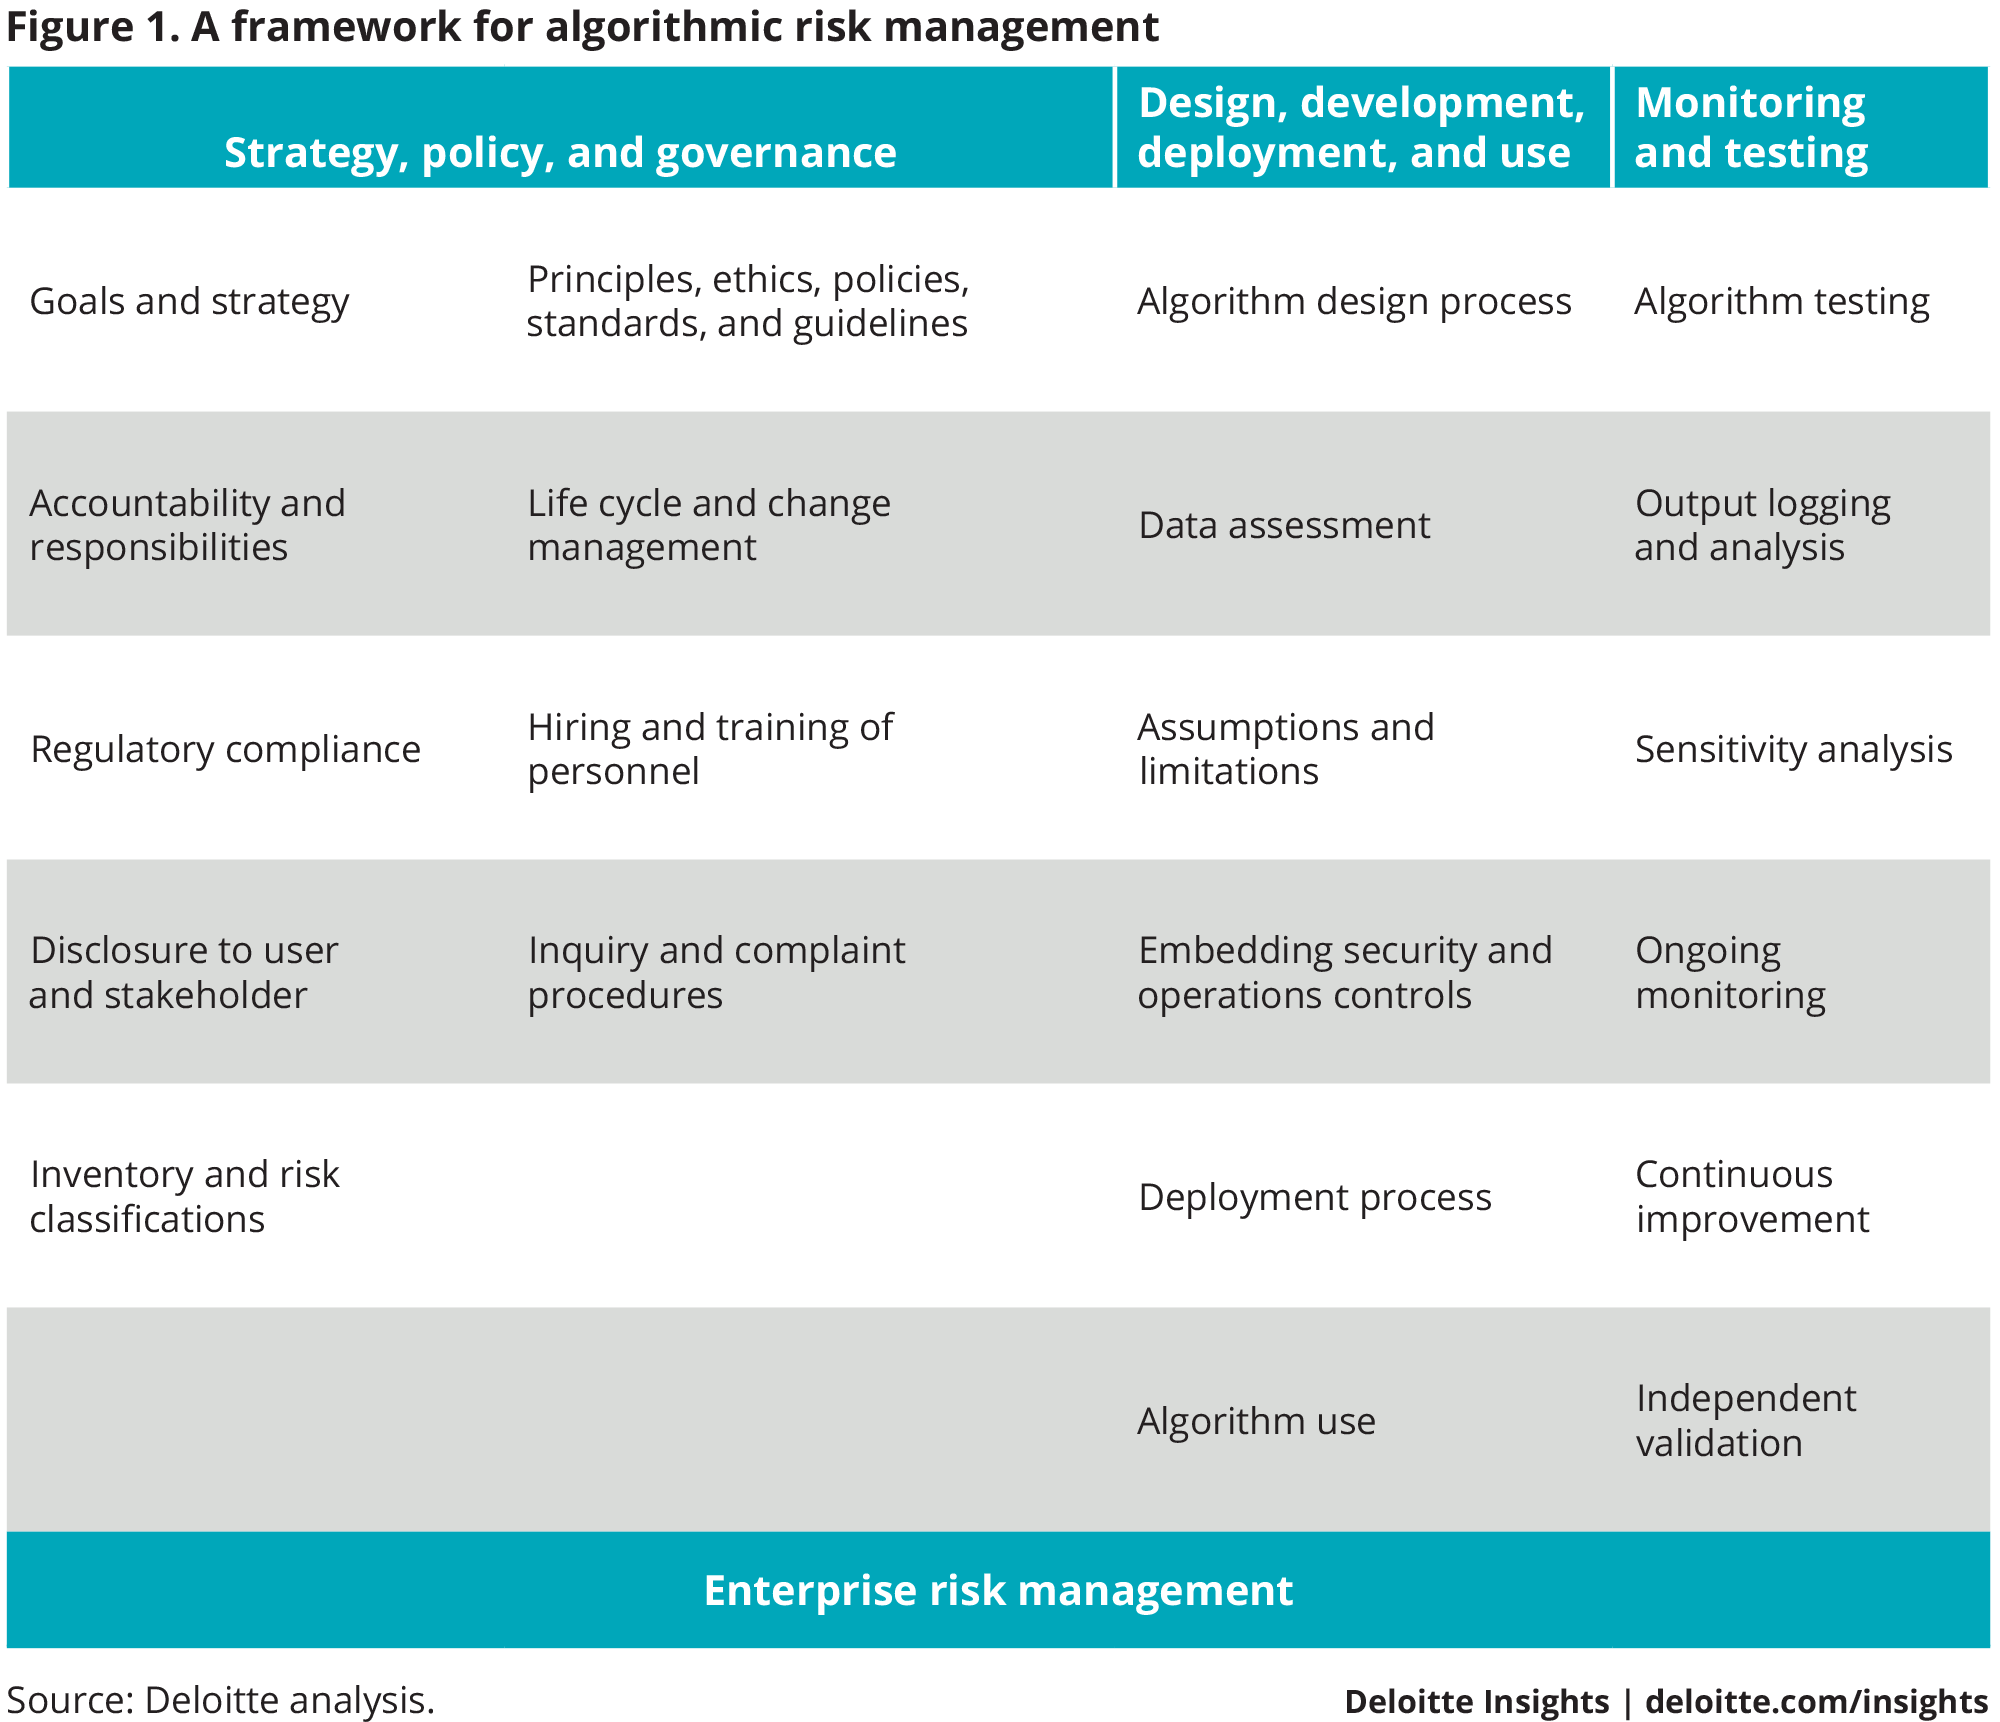 A framework for algorithmic risk management